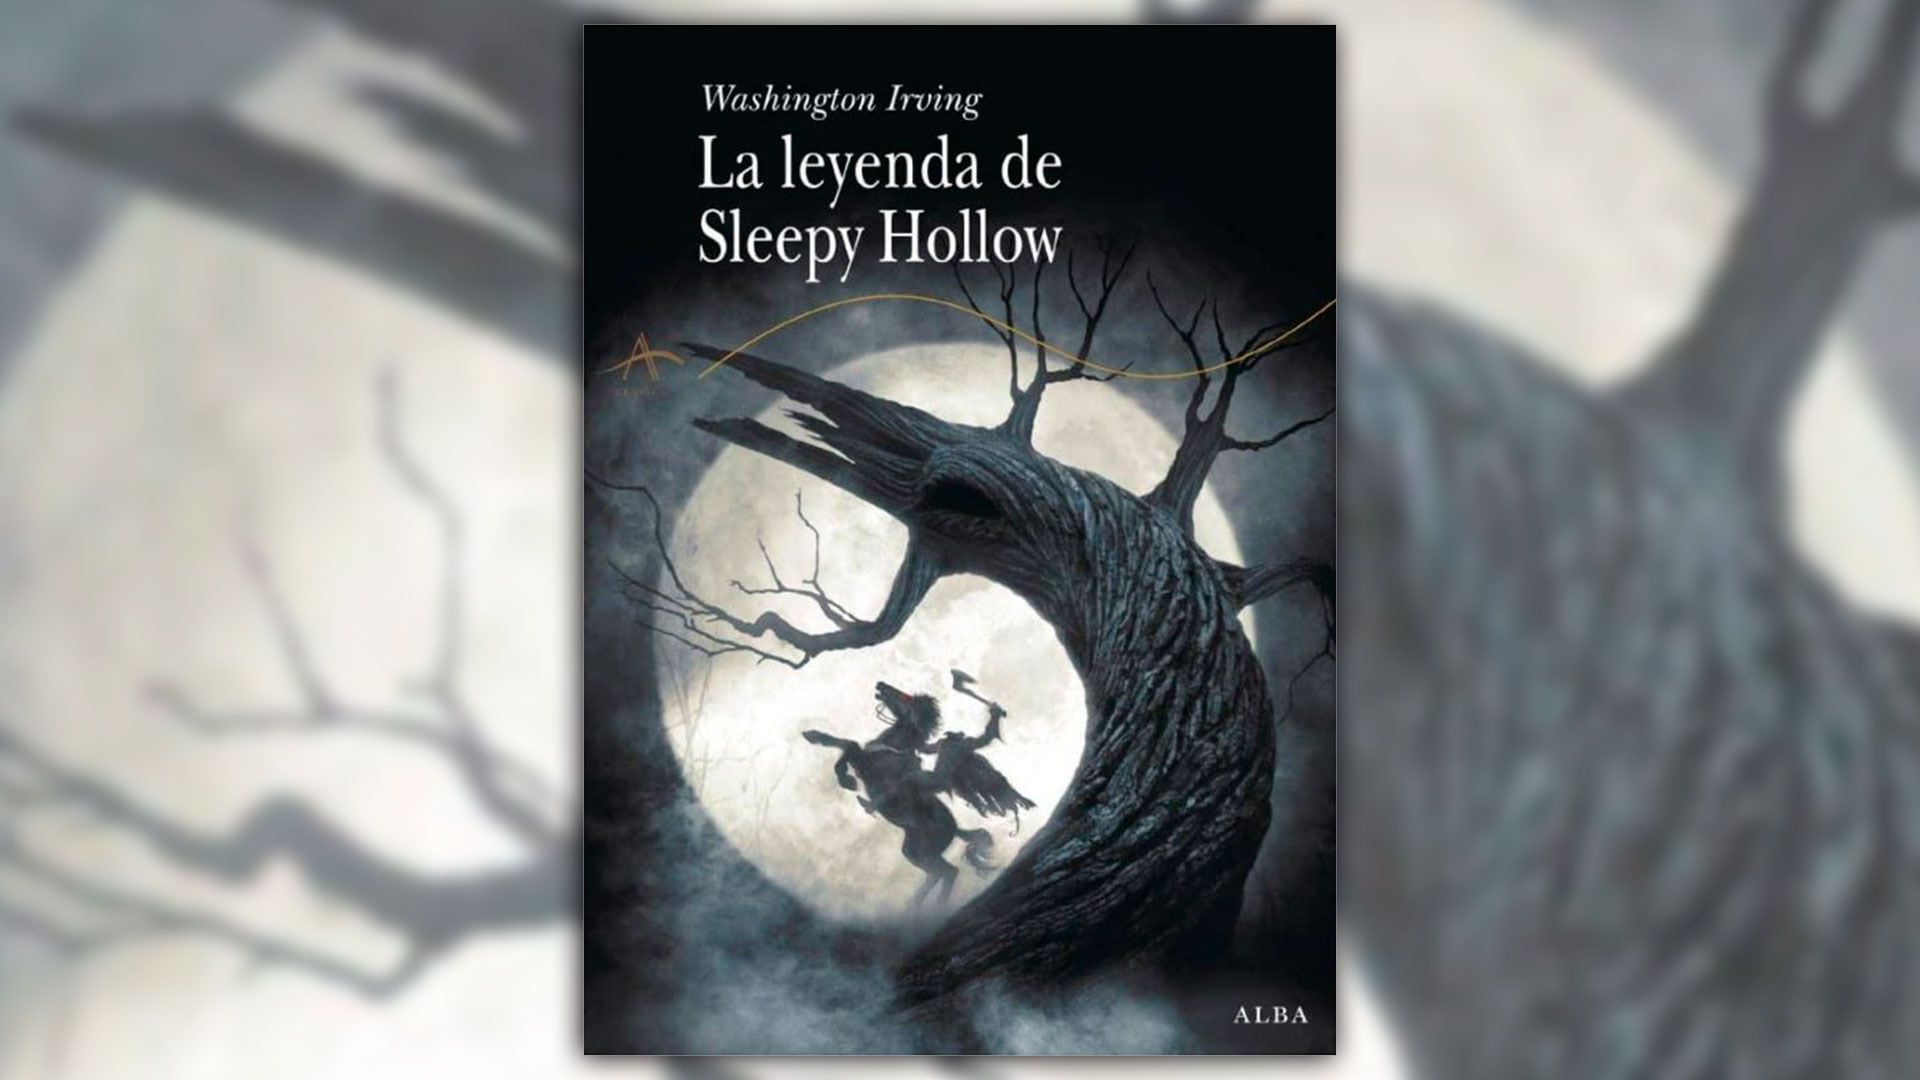 Portada del libro “La Leyenda de Sleepy Hollow” por Washington Irving